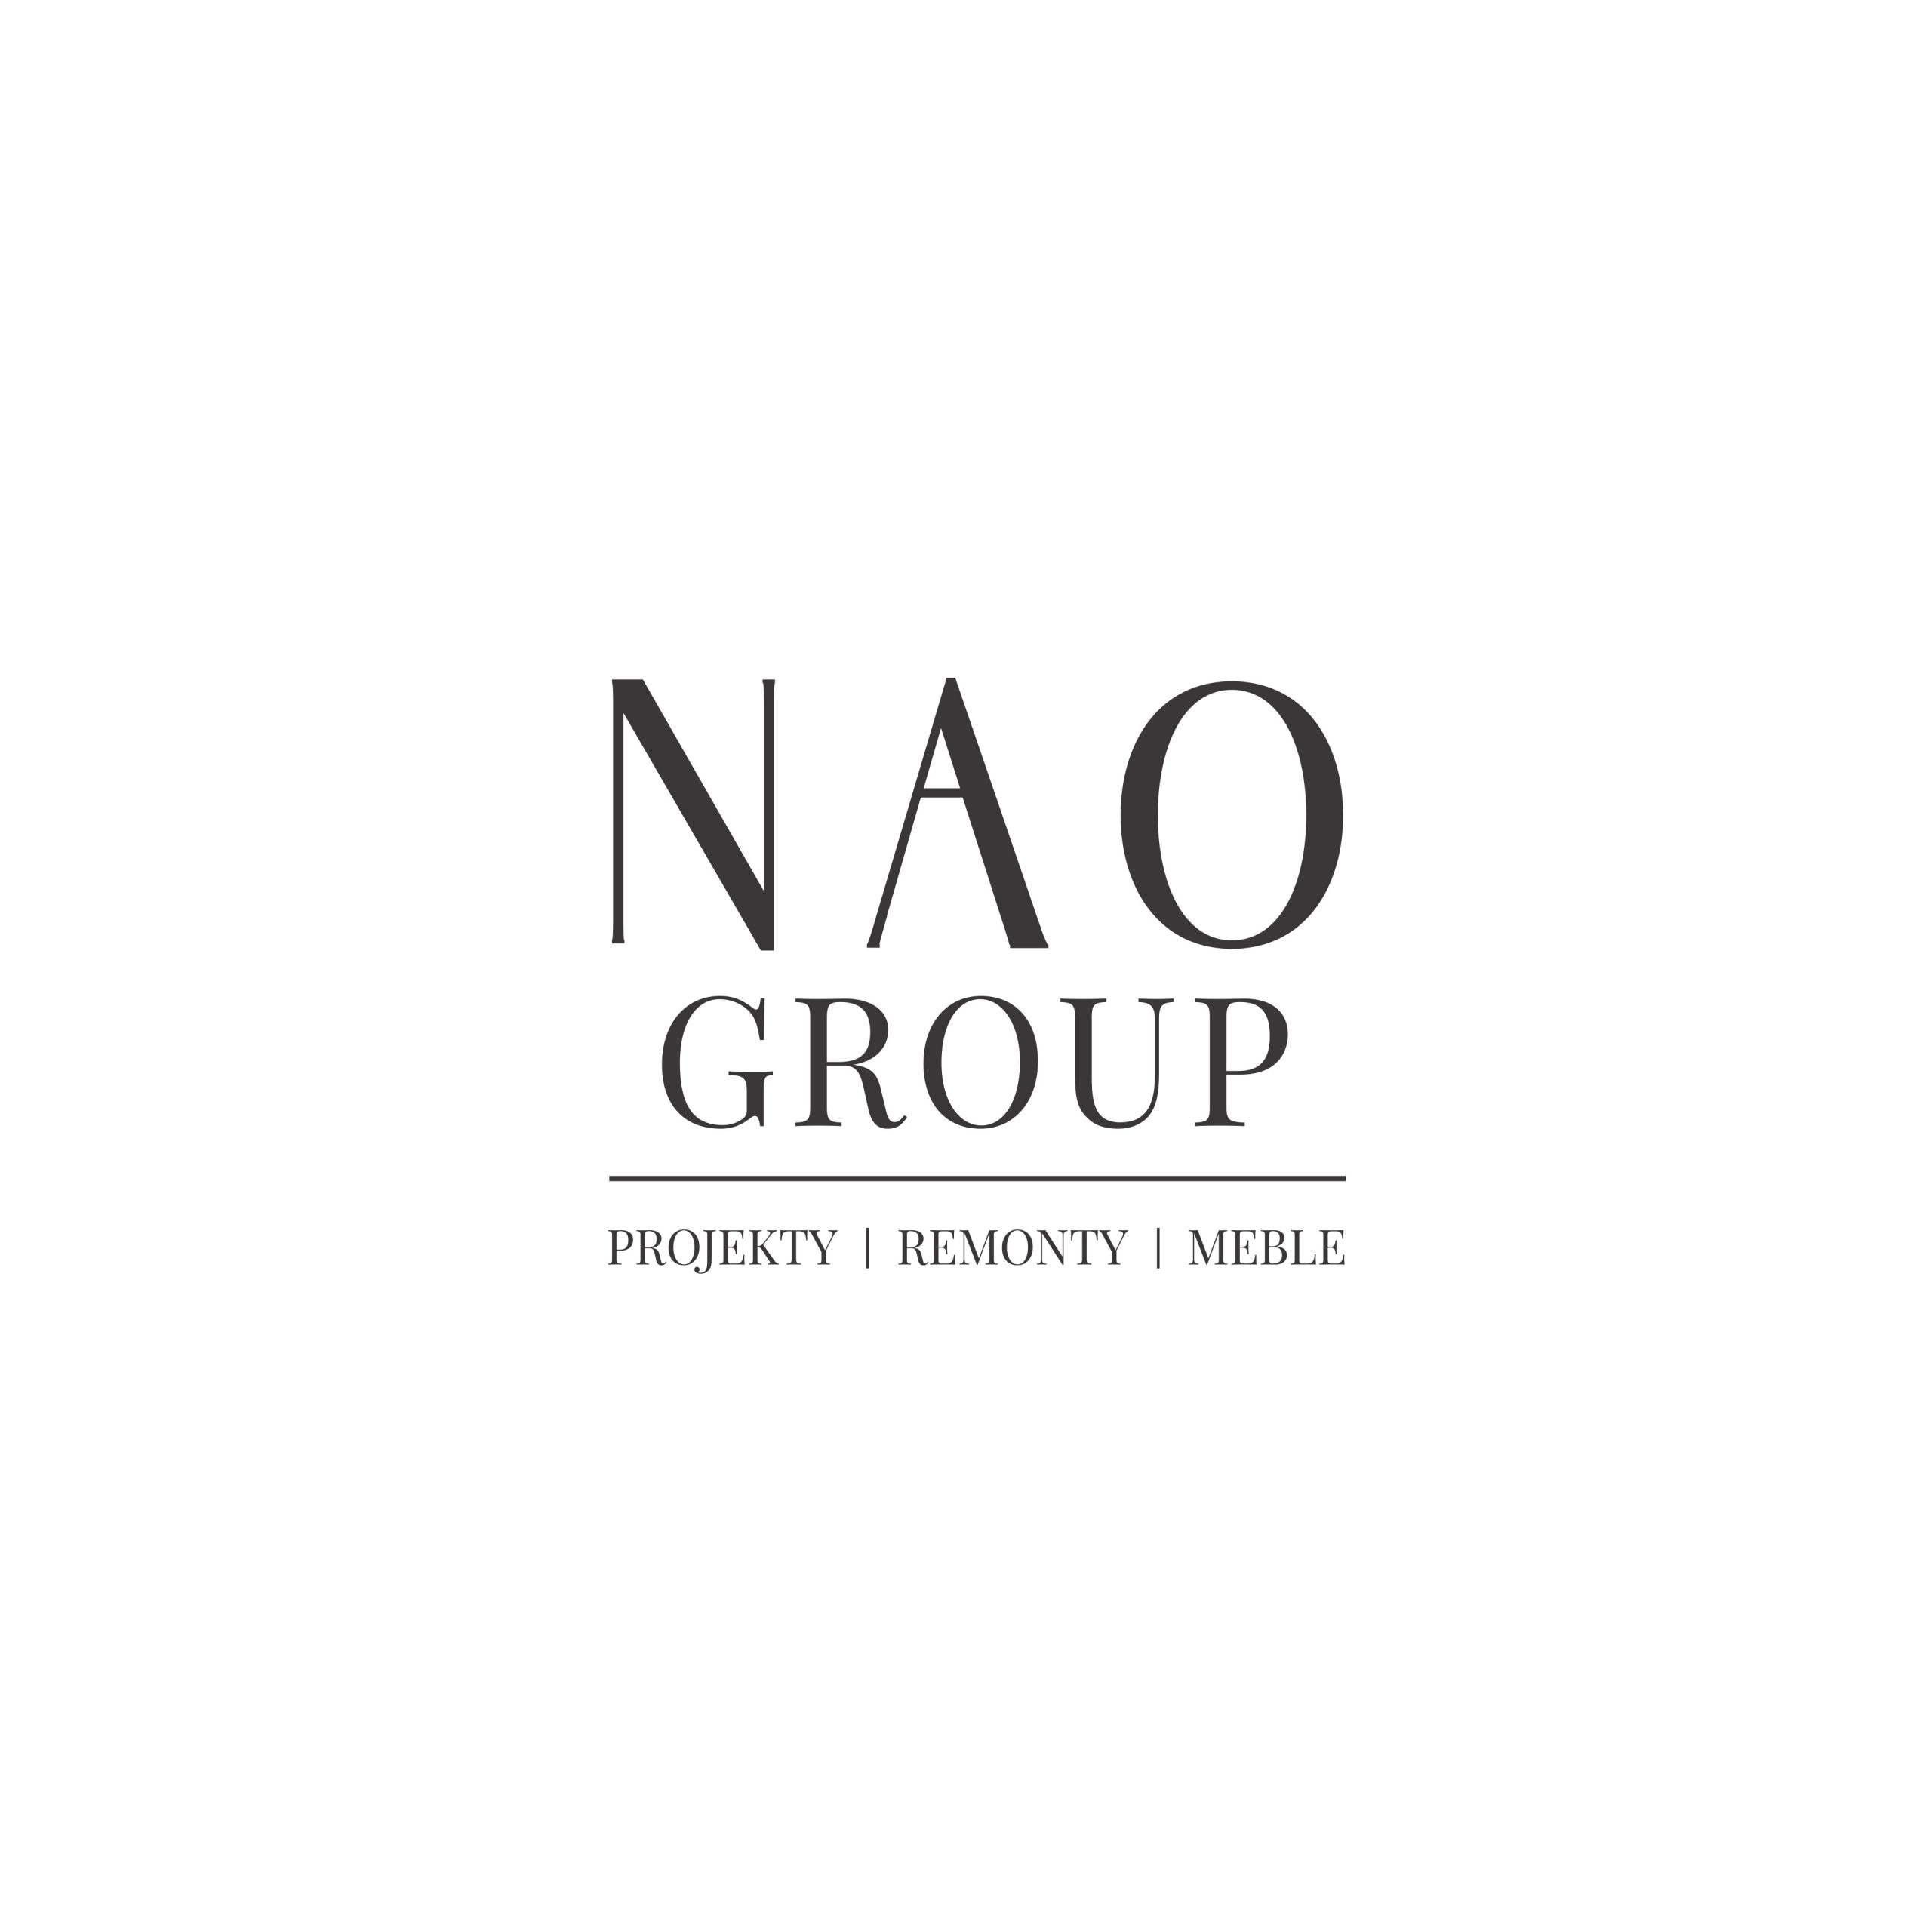 NAO Group - Projekty I Remonty I Meble